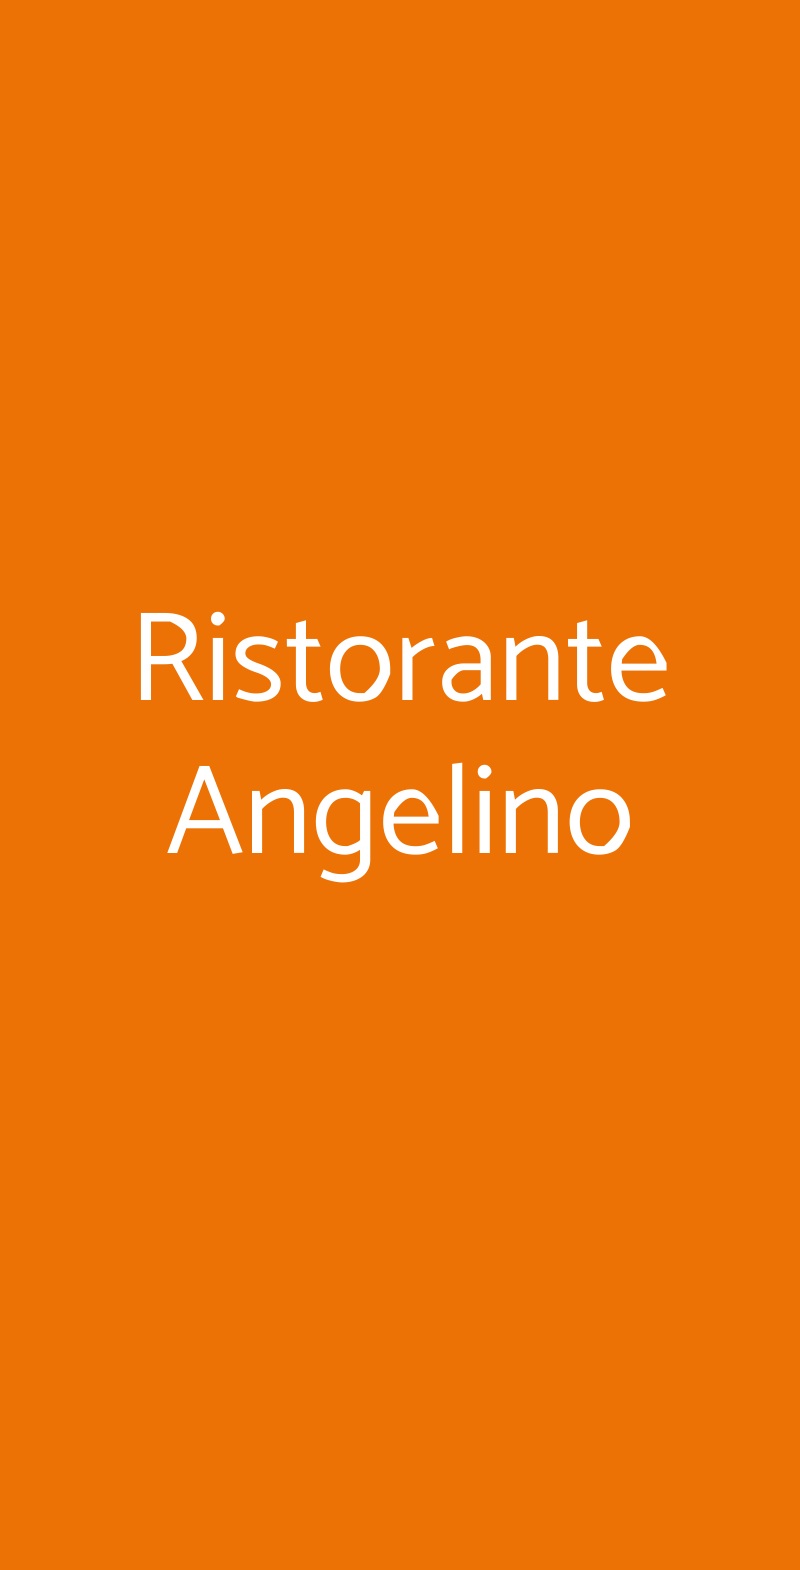 Ristorante Angelino Trapani menù 1 pagina